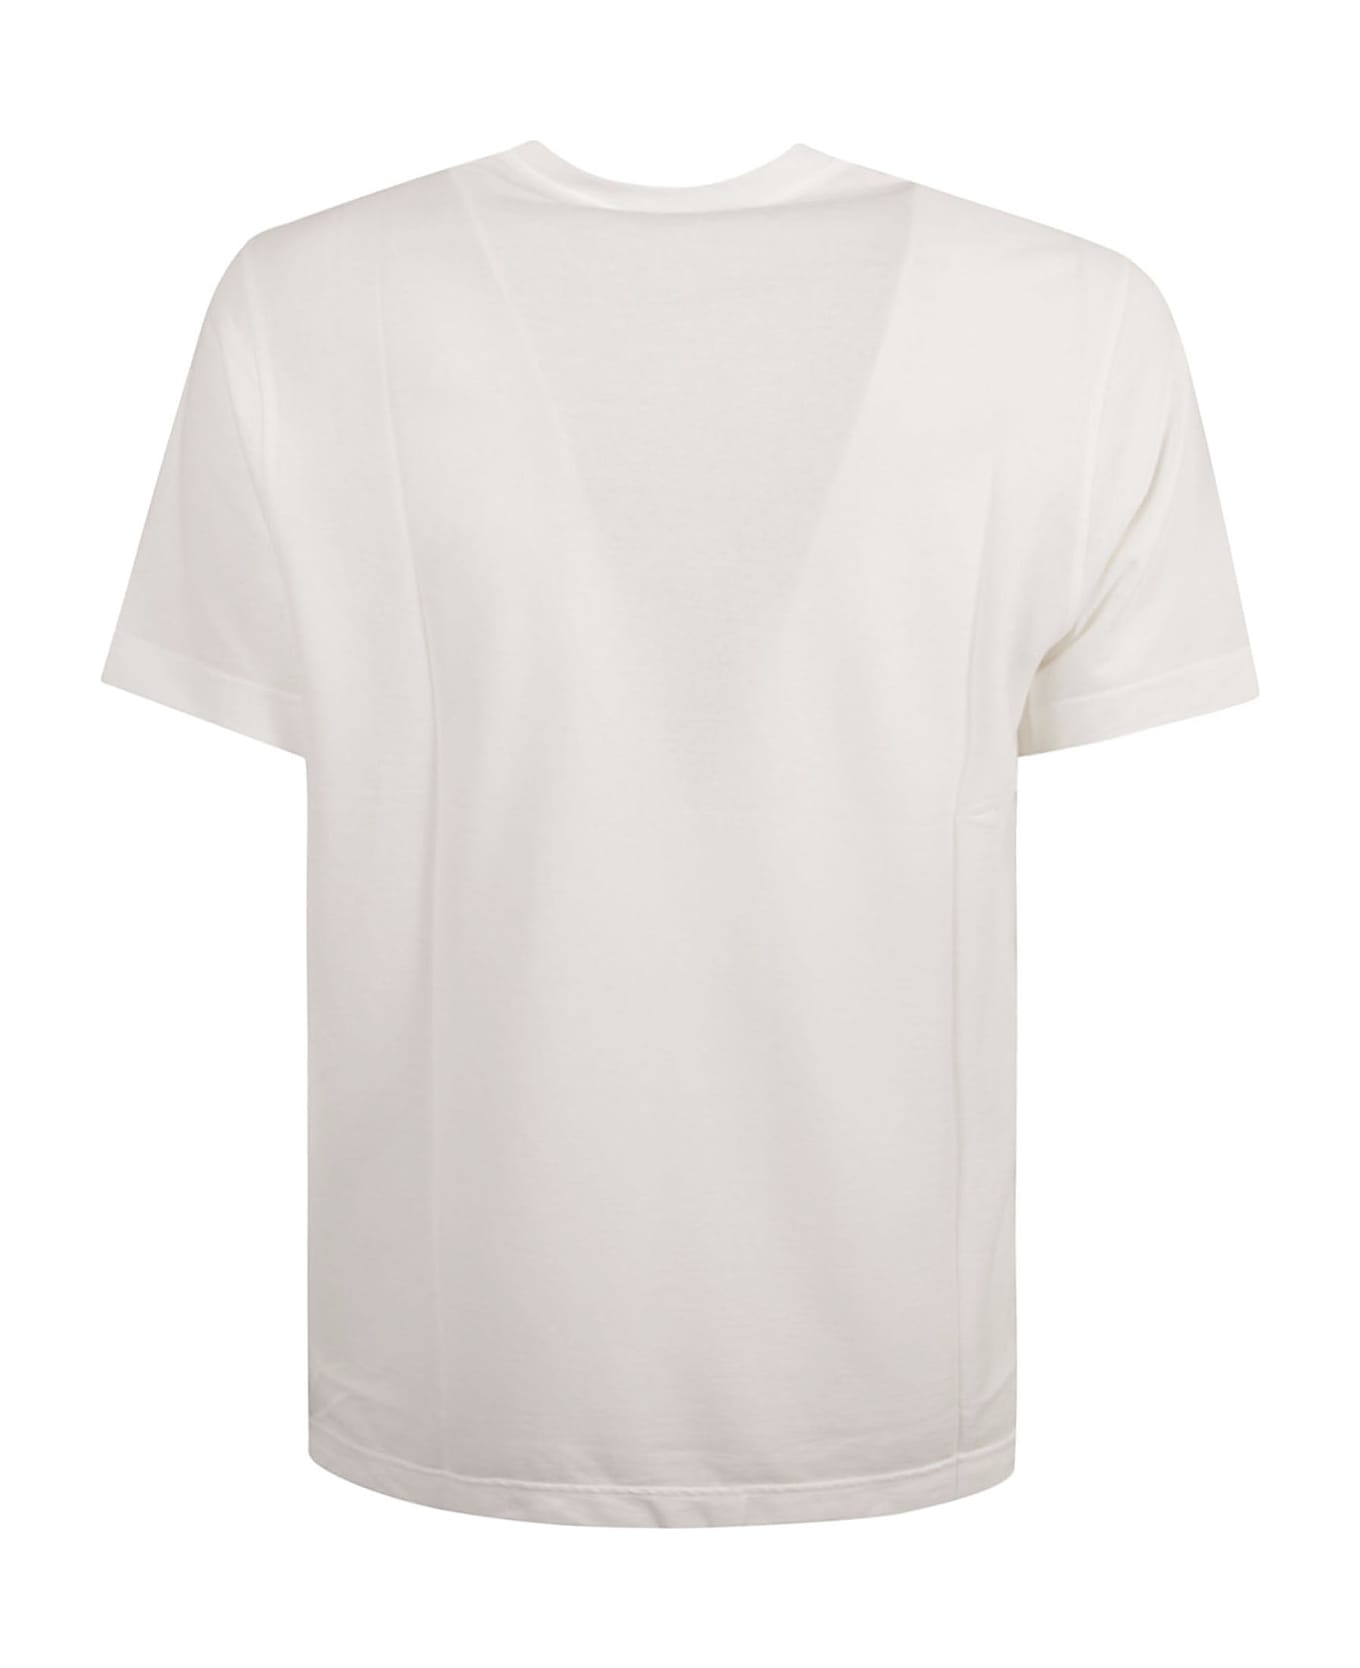 Zanone Round Neck Plain T-shirt - White Ottico シャツ